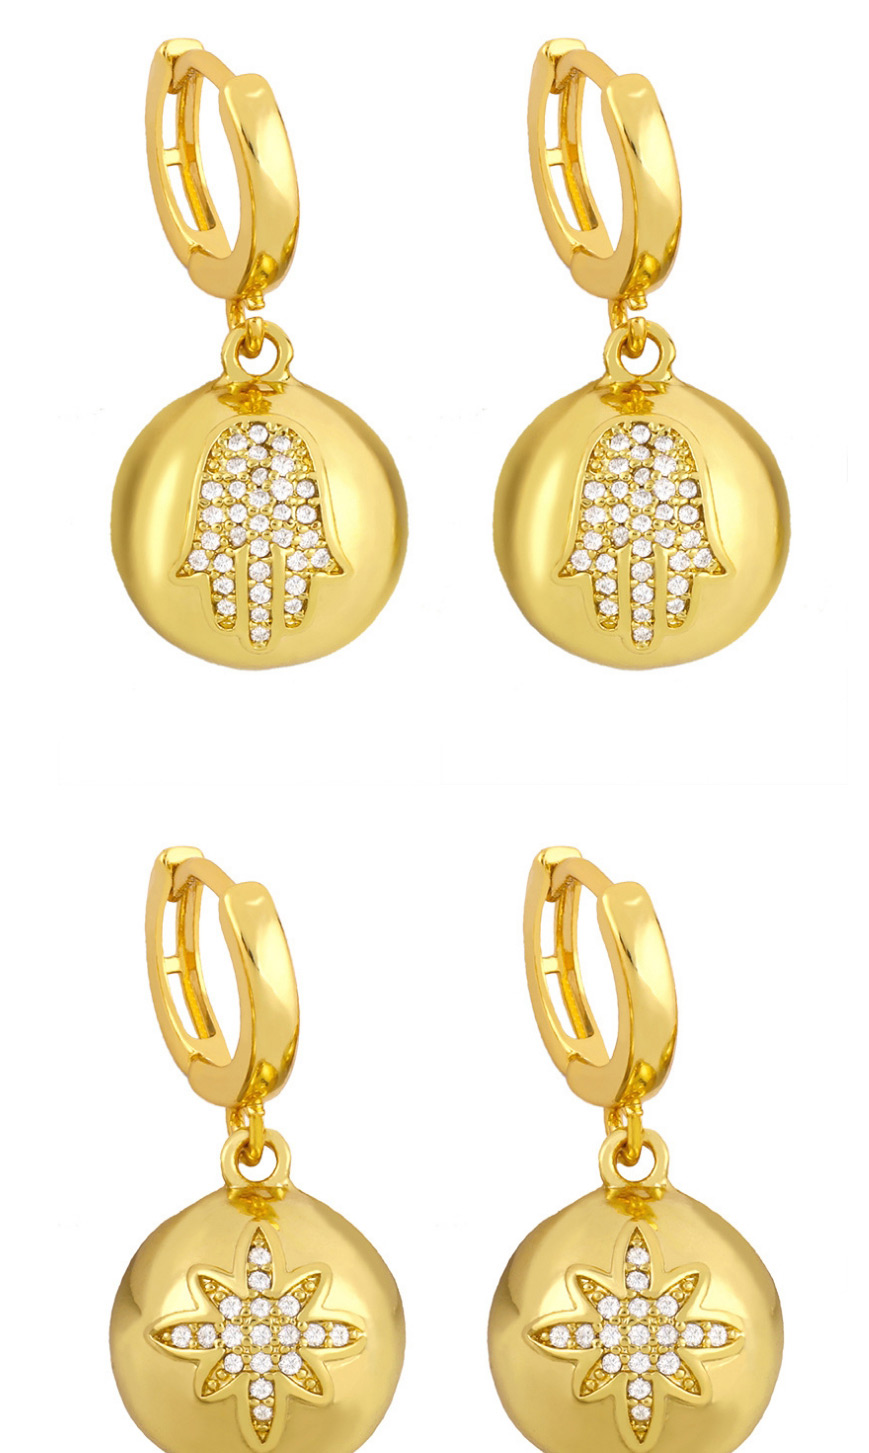 Fashion Our Lady Stars Moon Balls Diamonds Butterfly Love Heart Geometric Earrings,Earrings